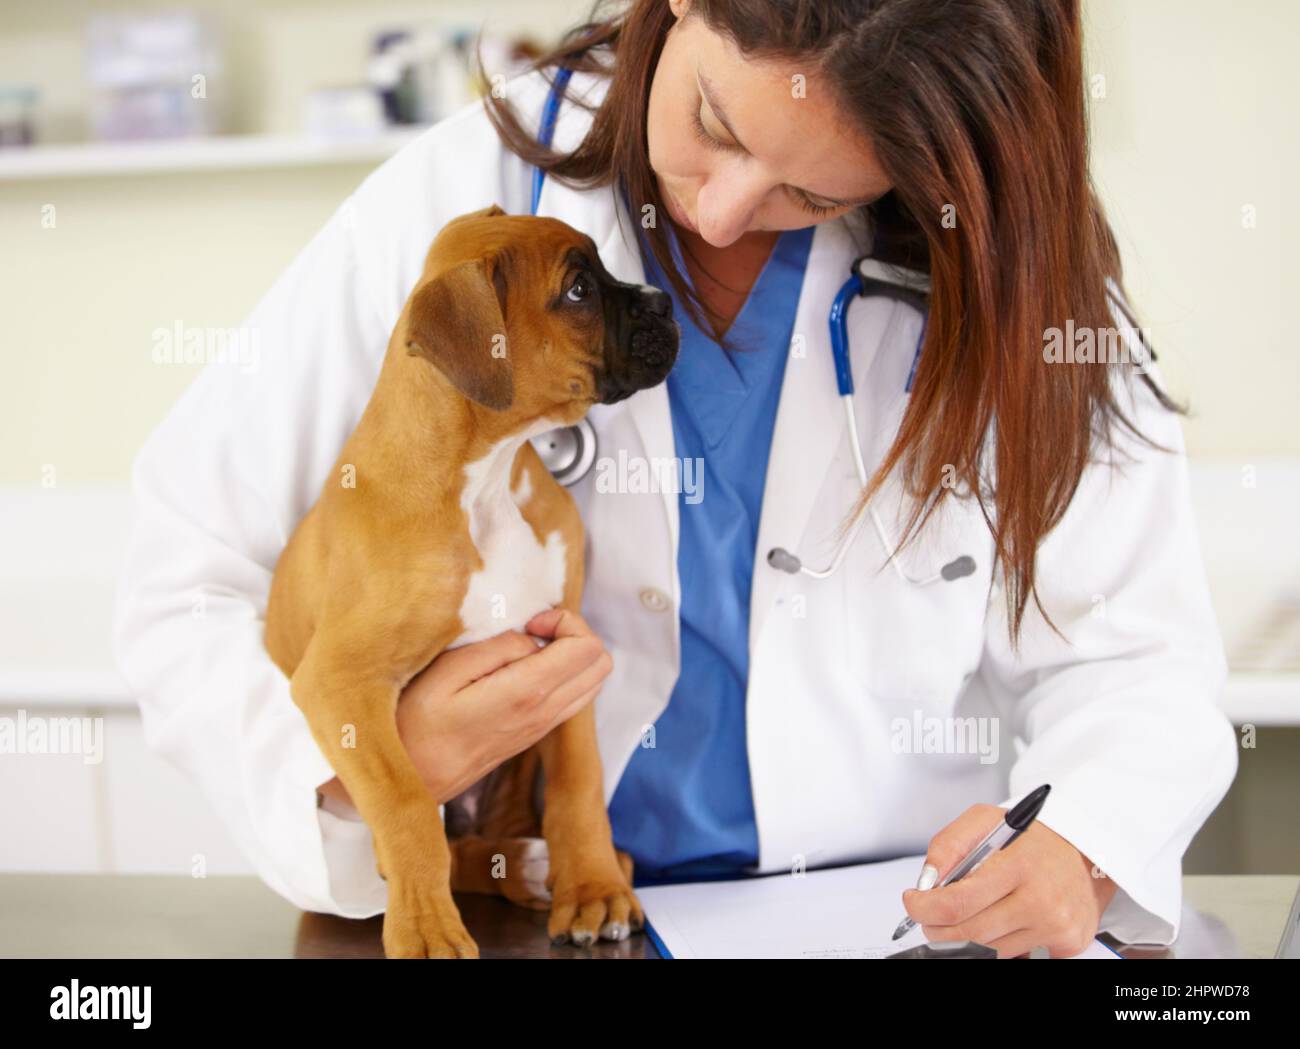 Hes ein gesunder Welpe. Aufnahme eines Tierarztes, der einen Welpen auf einem Untersuchungstisch untersucht. Stockfoto